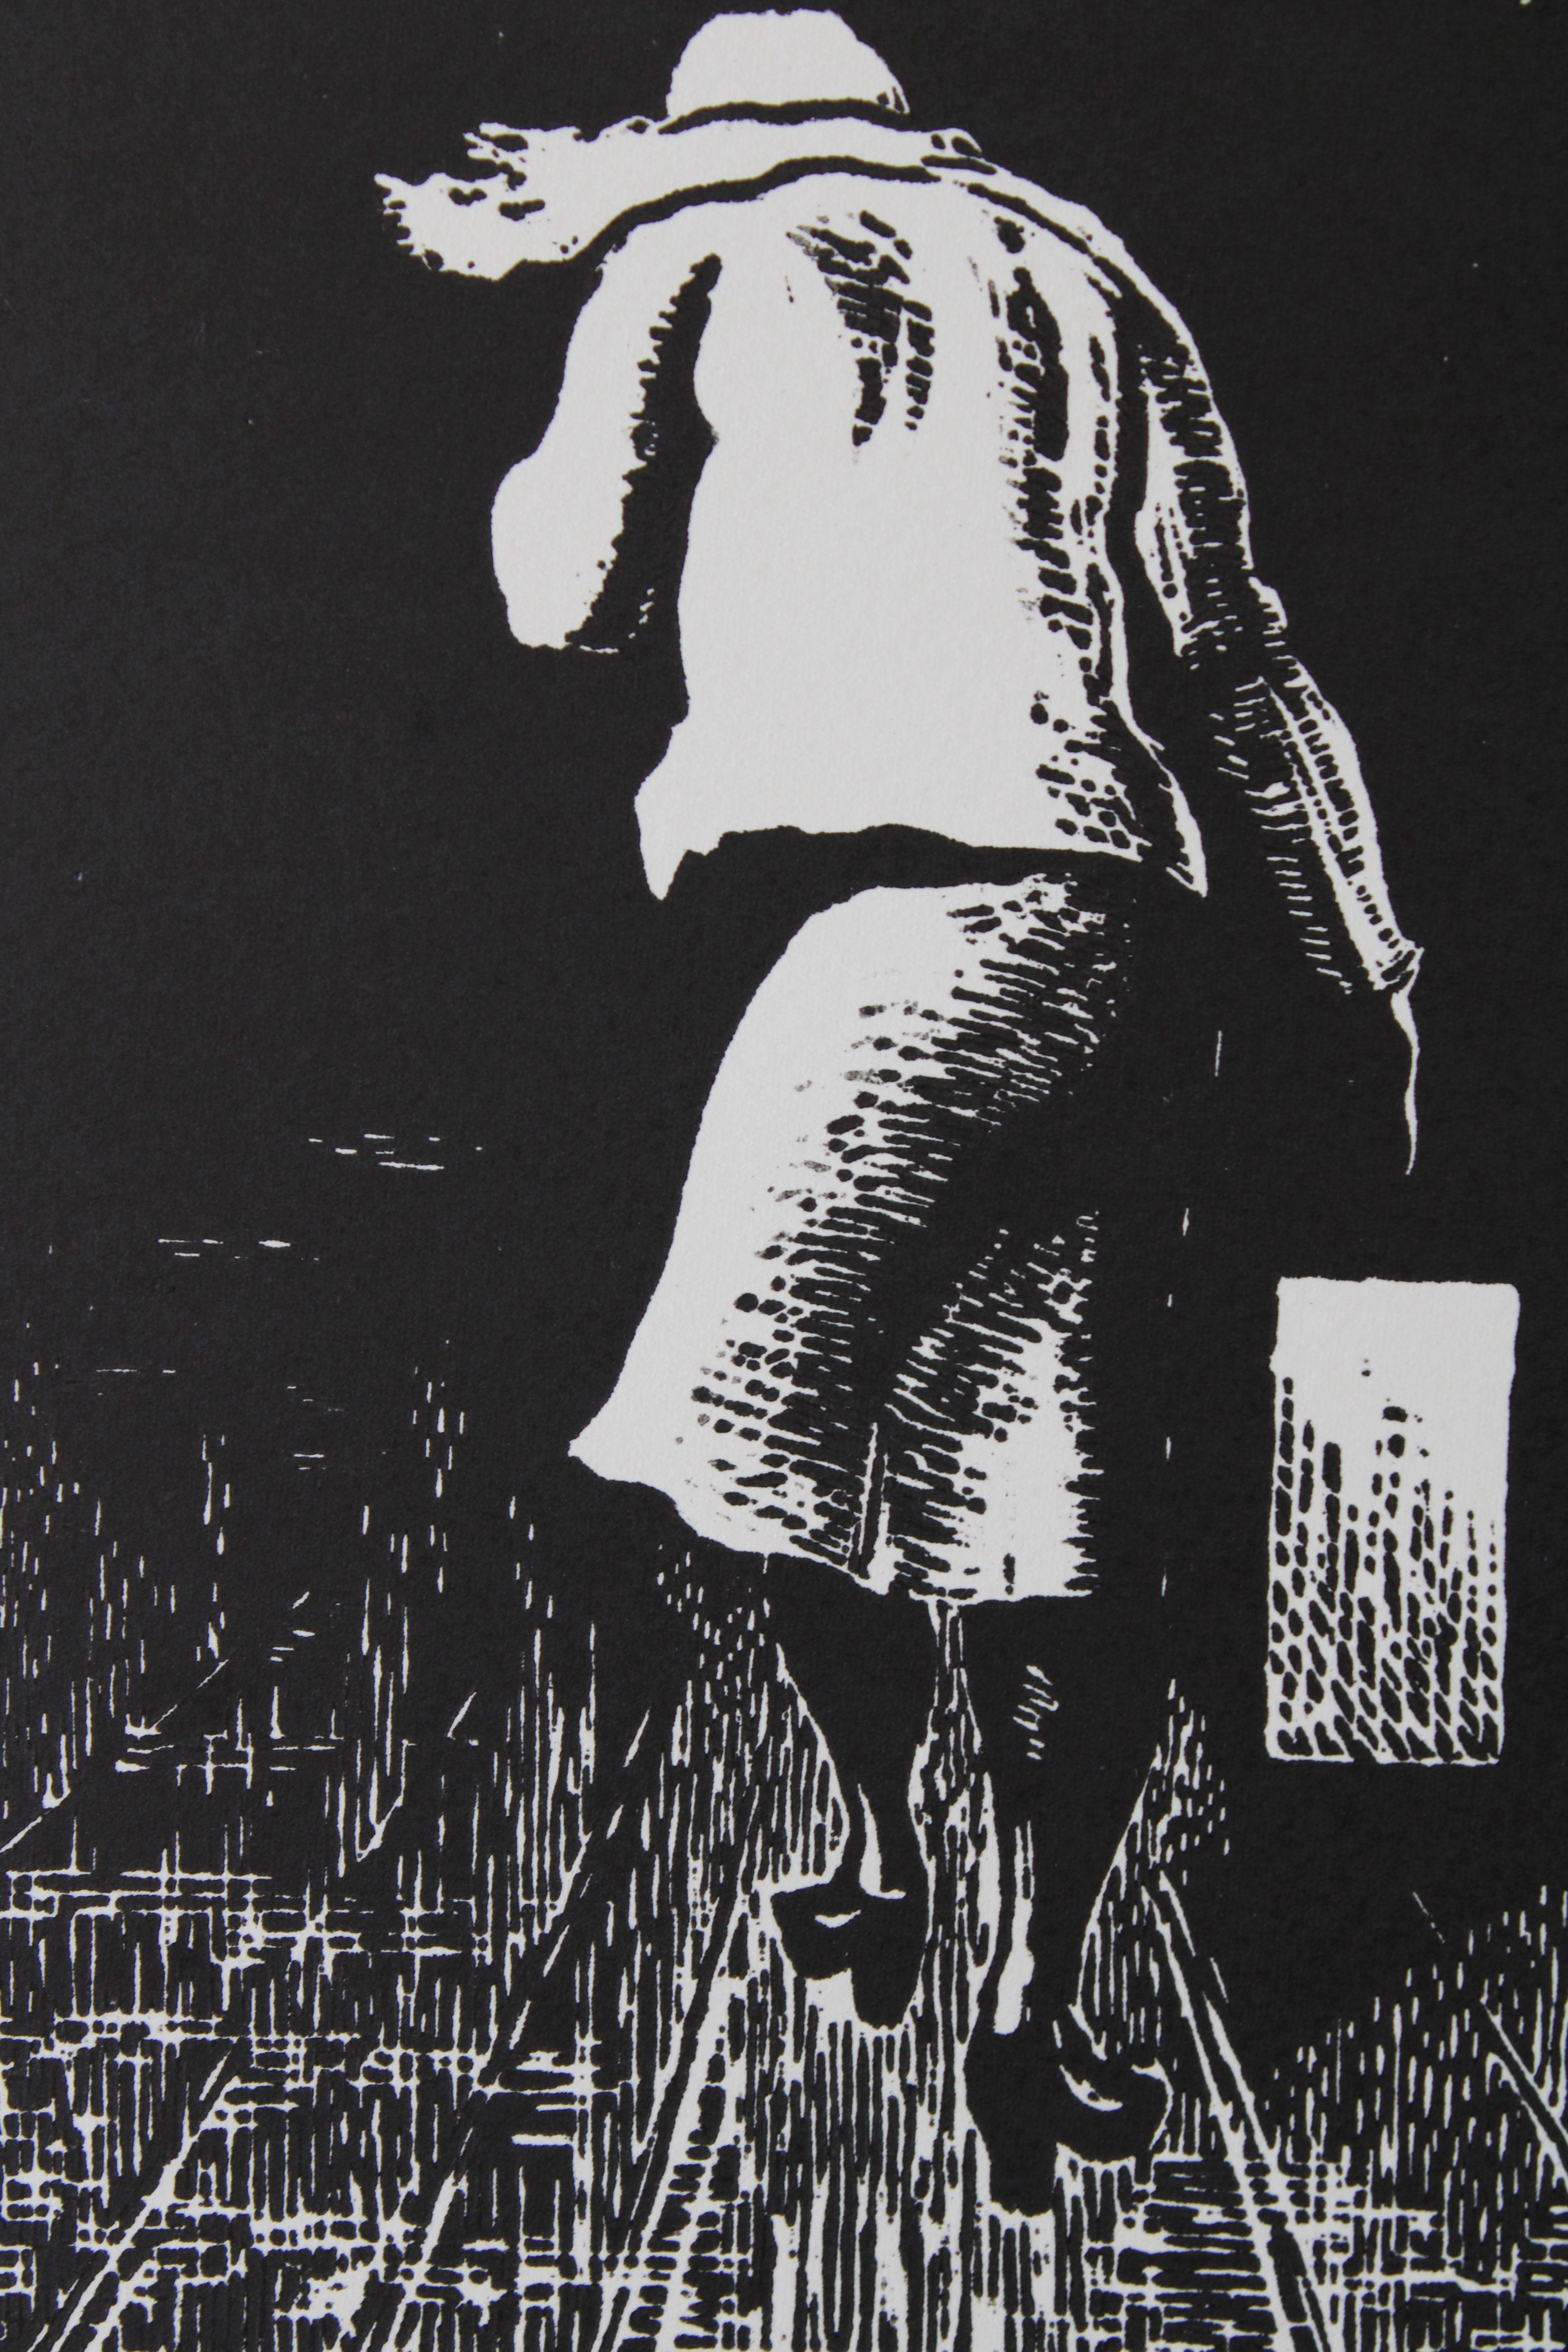 Diptychon

1980. Papier, Linolschnitt, jedes Kunstwerk 24,5х15 cm

Das Diptychon aus dem Jahr 1980 besteht aus zwei Linolschnitten auf Papier. Jedes Kunstwerk ist 24,5x15 cm groß. Das Motiv des Diptychons zeigt eine Frau und einen Mann, die mit